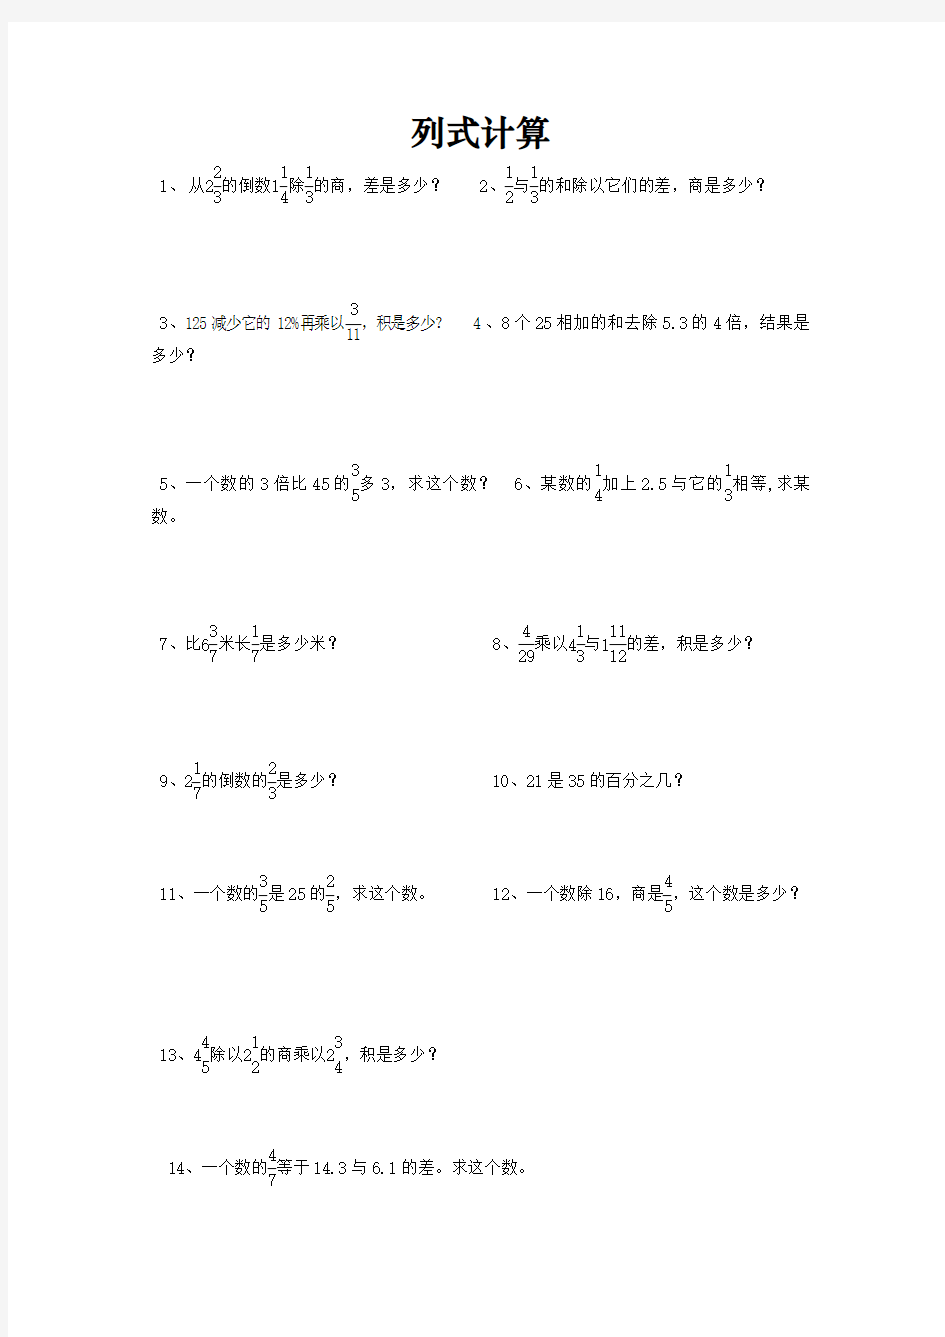 【小升初】小学六年级数学总复习题库：列式计算-专题精选